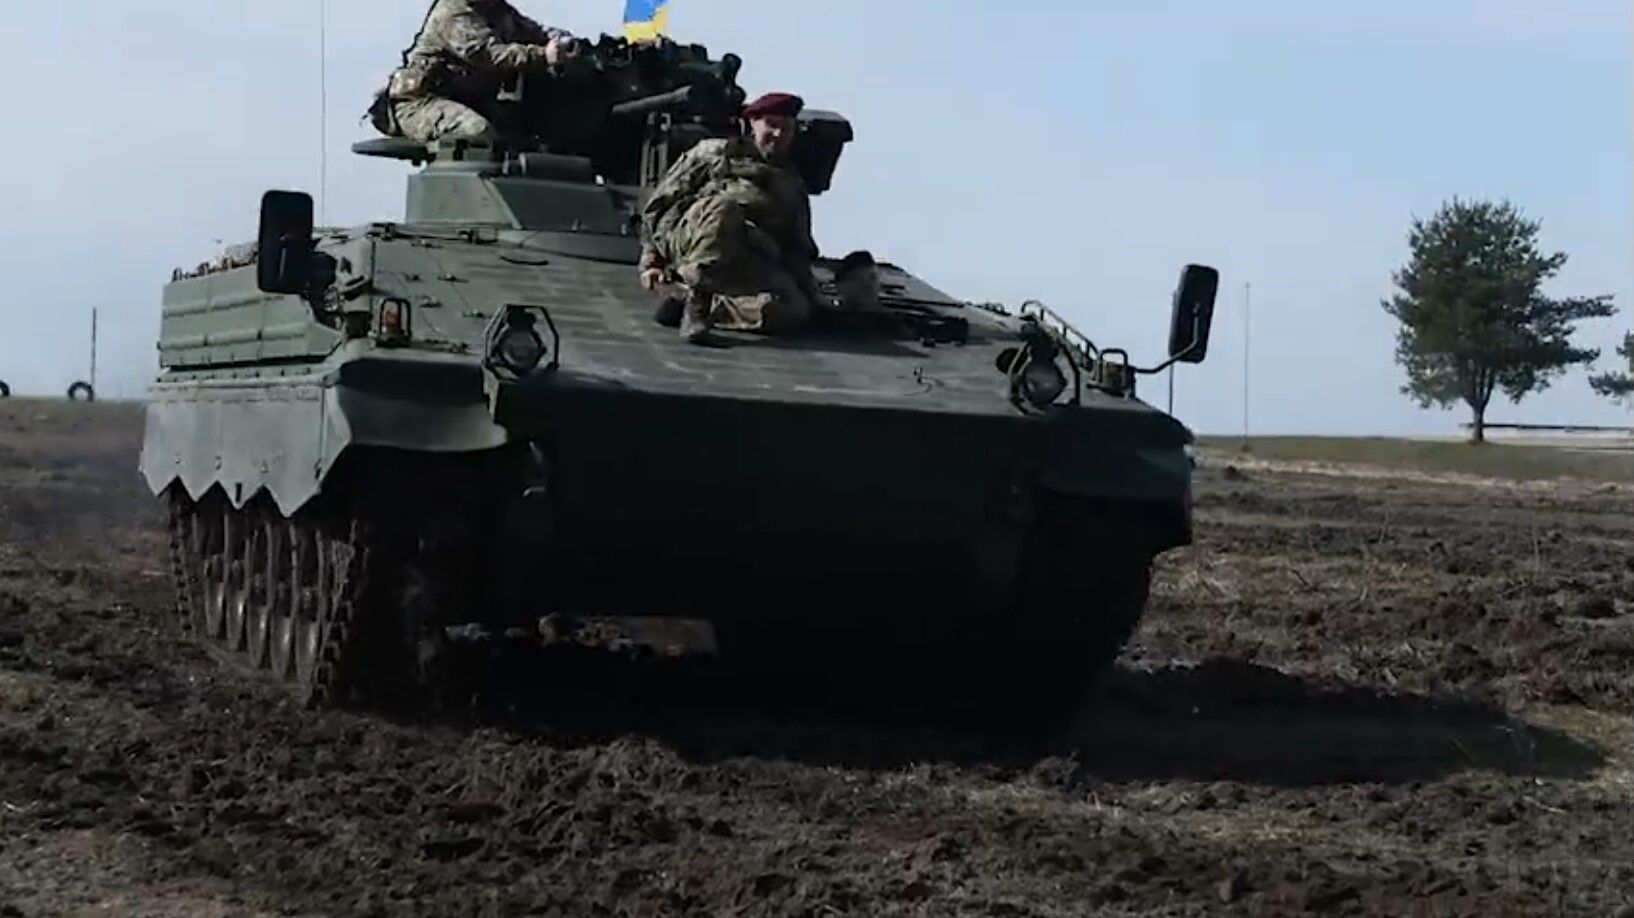 "Отличный пример немецкого качества": Резников испытал БМП Marder в Украине. Видео